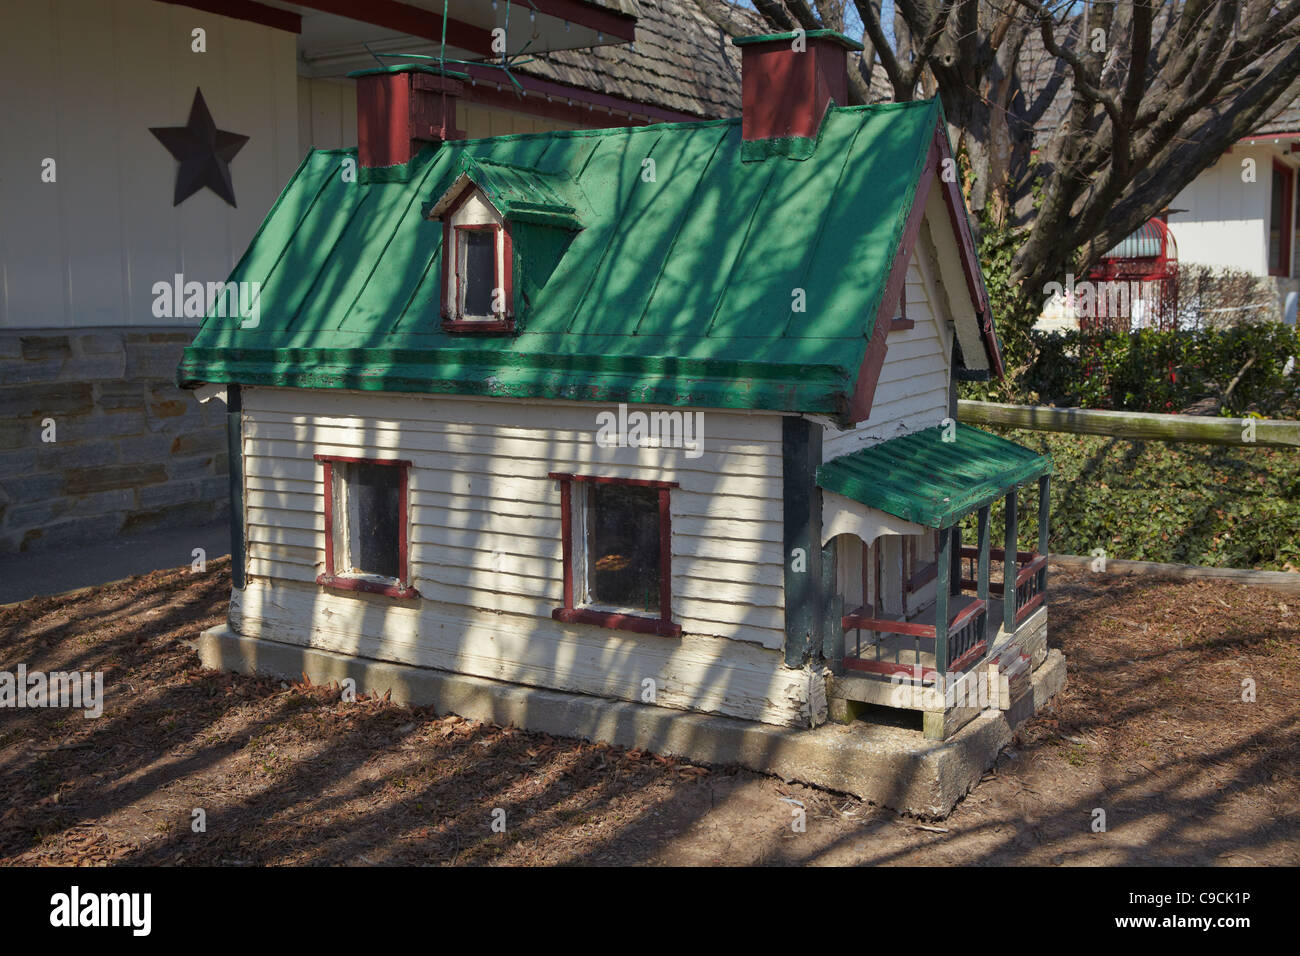 Une maison miniature dans l'avant de l'auberge confortable restaurant, Thurmont, Maryland. Banque D'Images